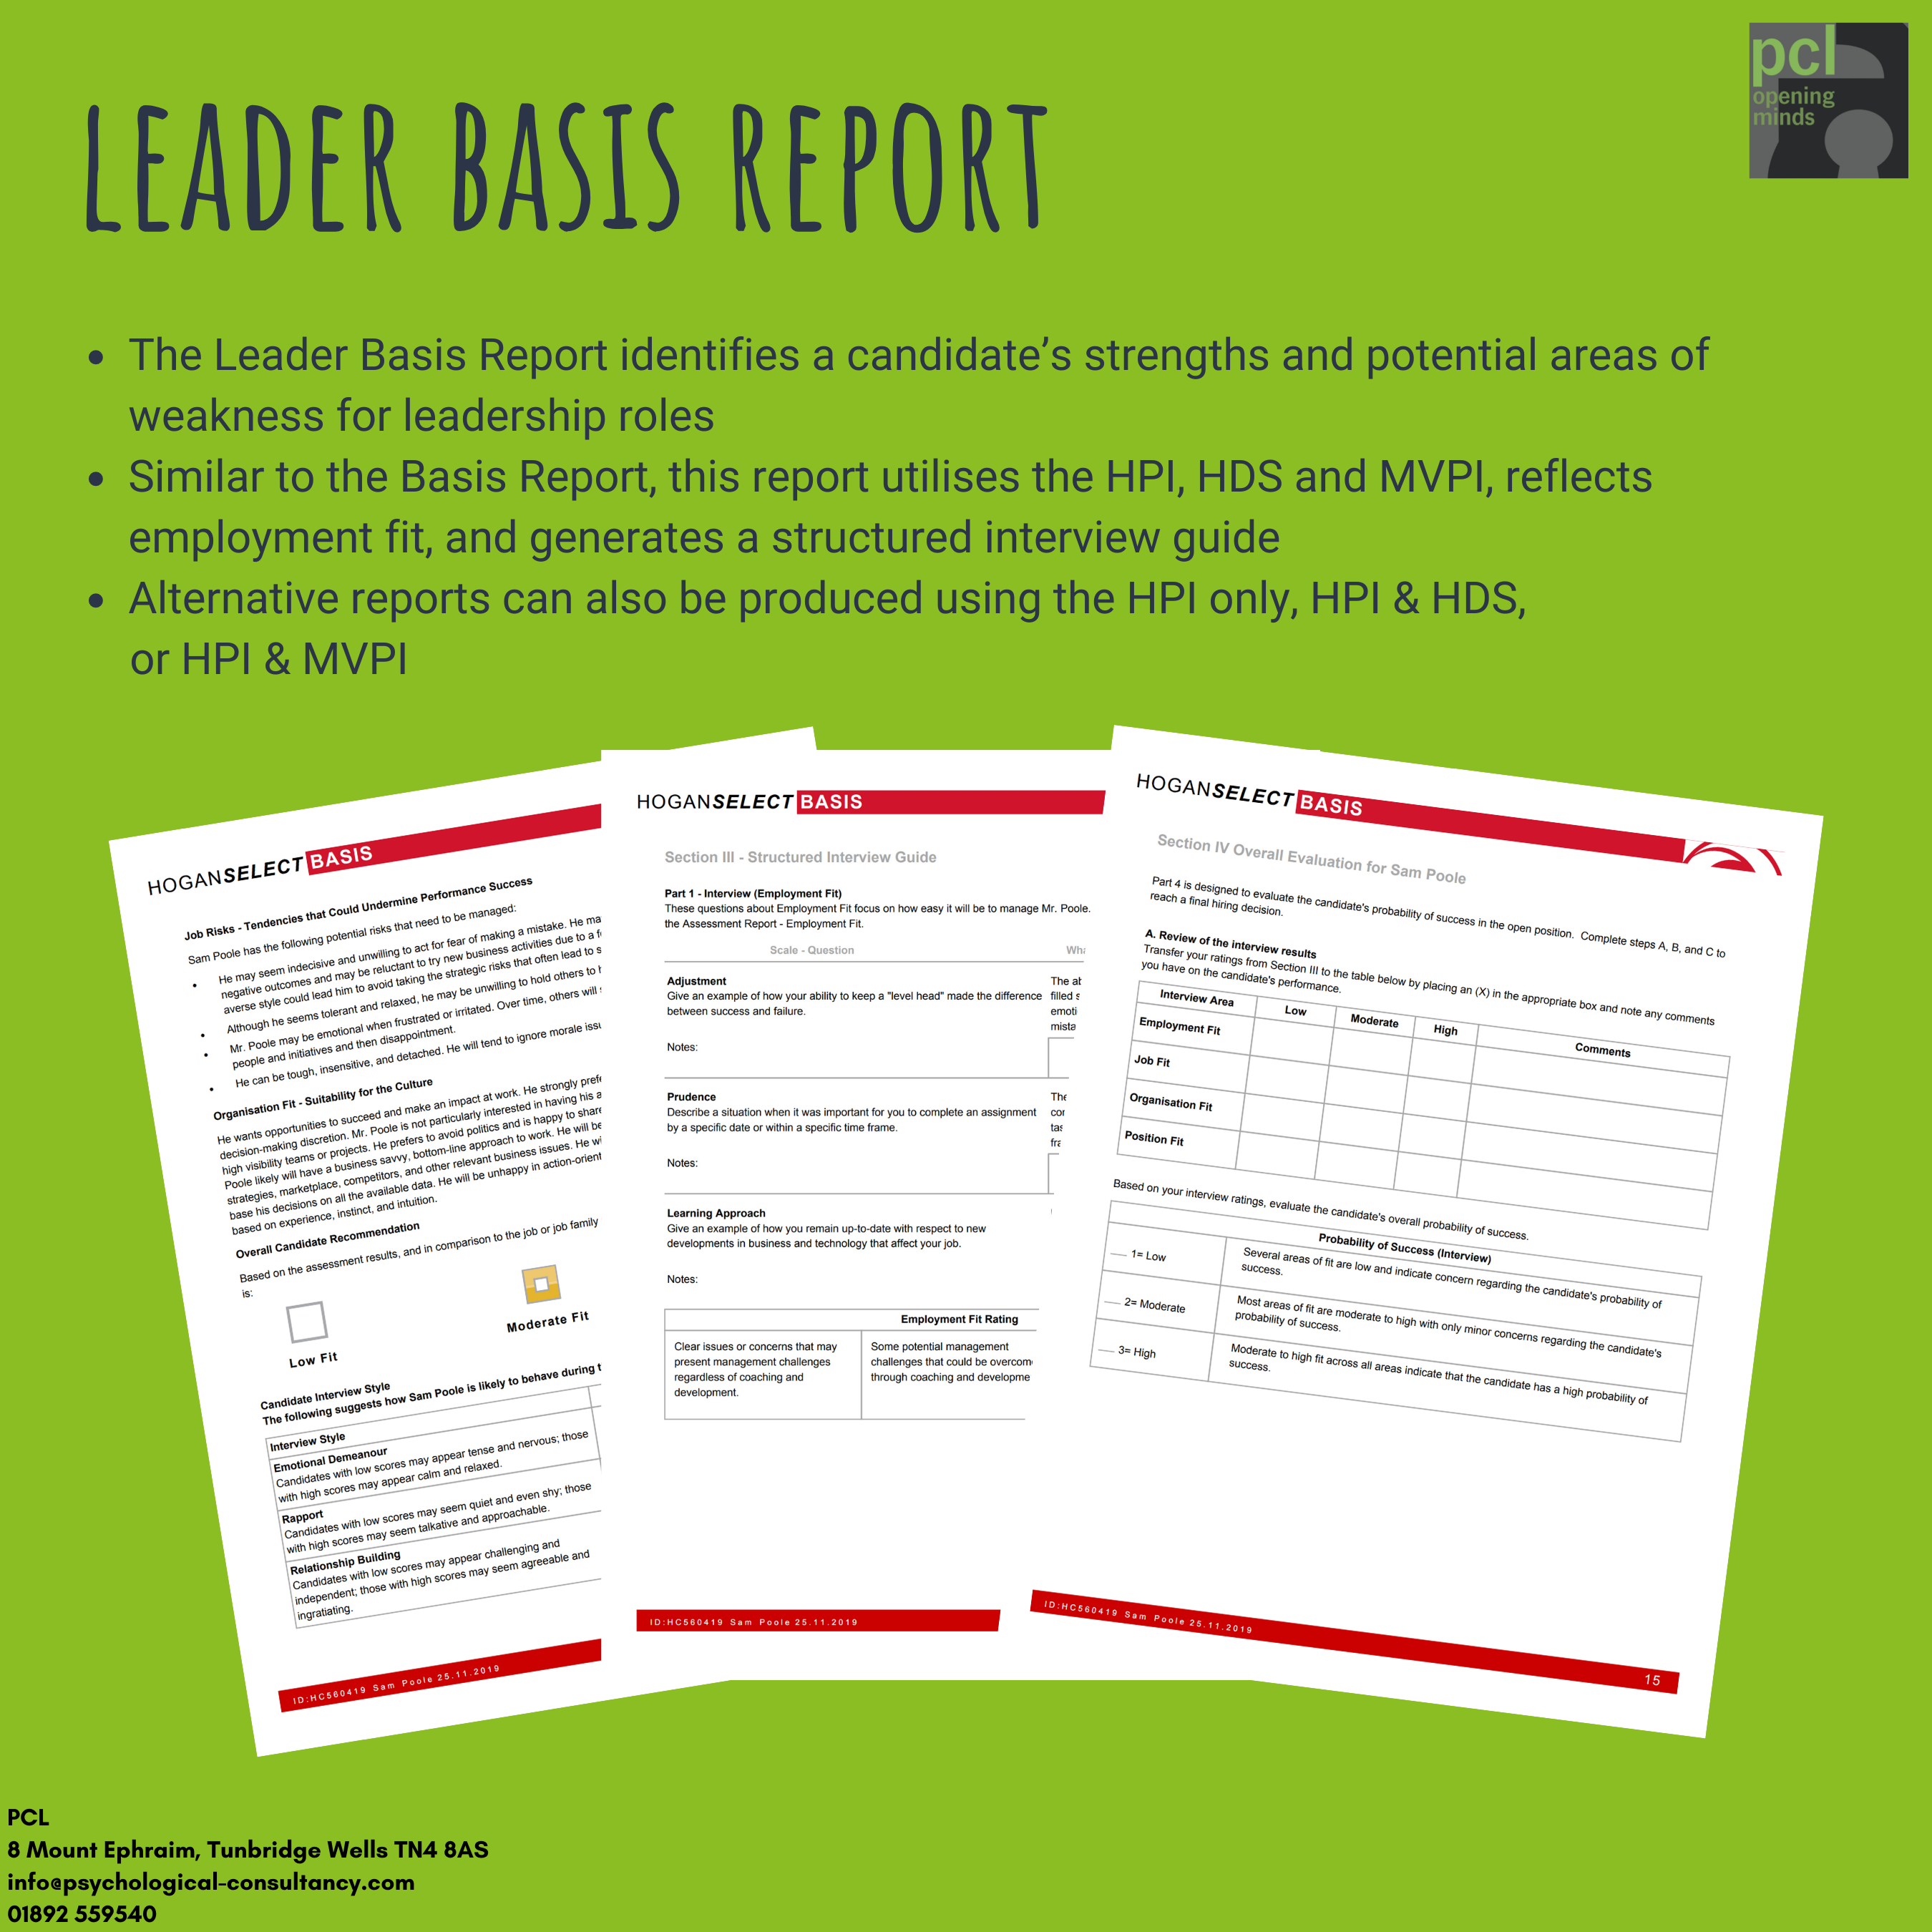 The Leader Basis Report Hogan Sample